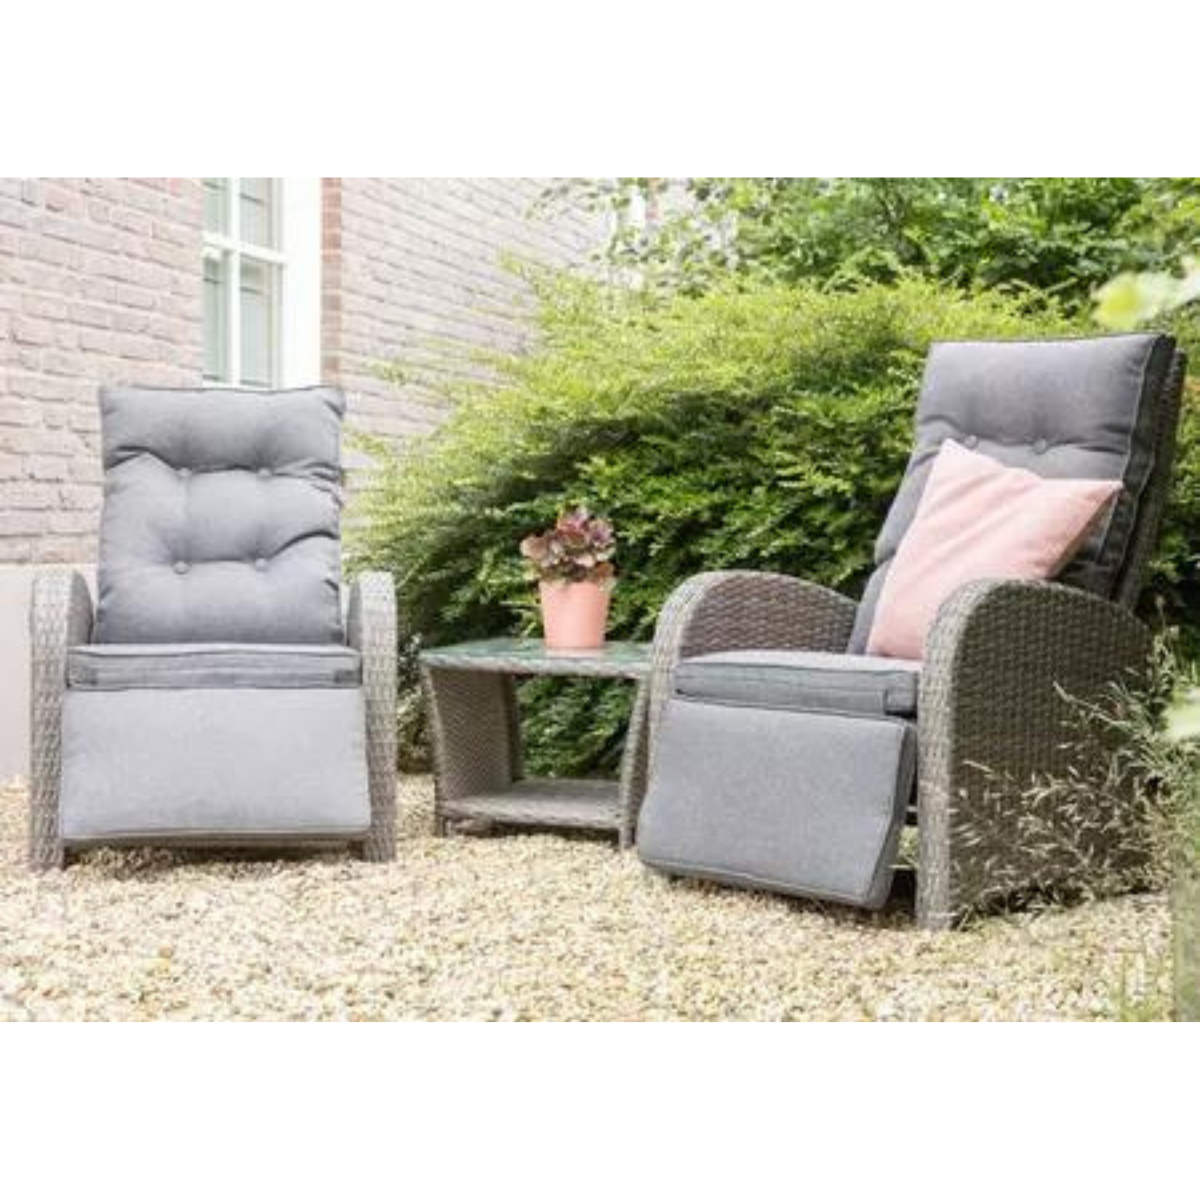 Nancy's Posen 2 Garden chairs - Side table - Lounge set - Wicker - Gray 